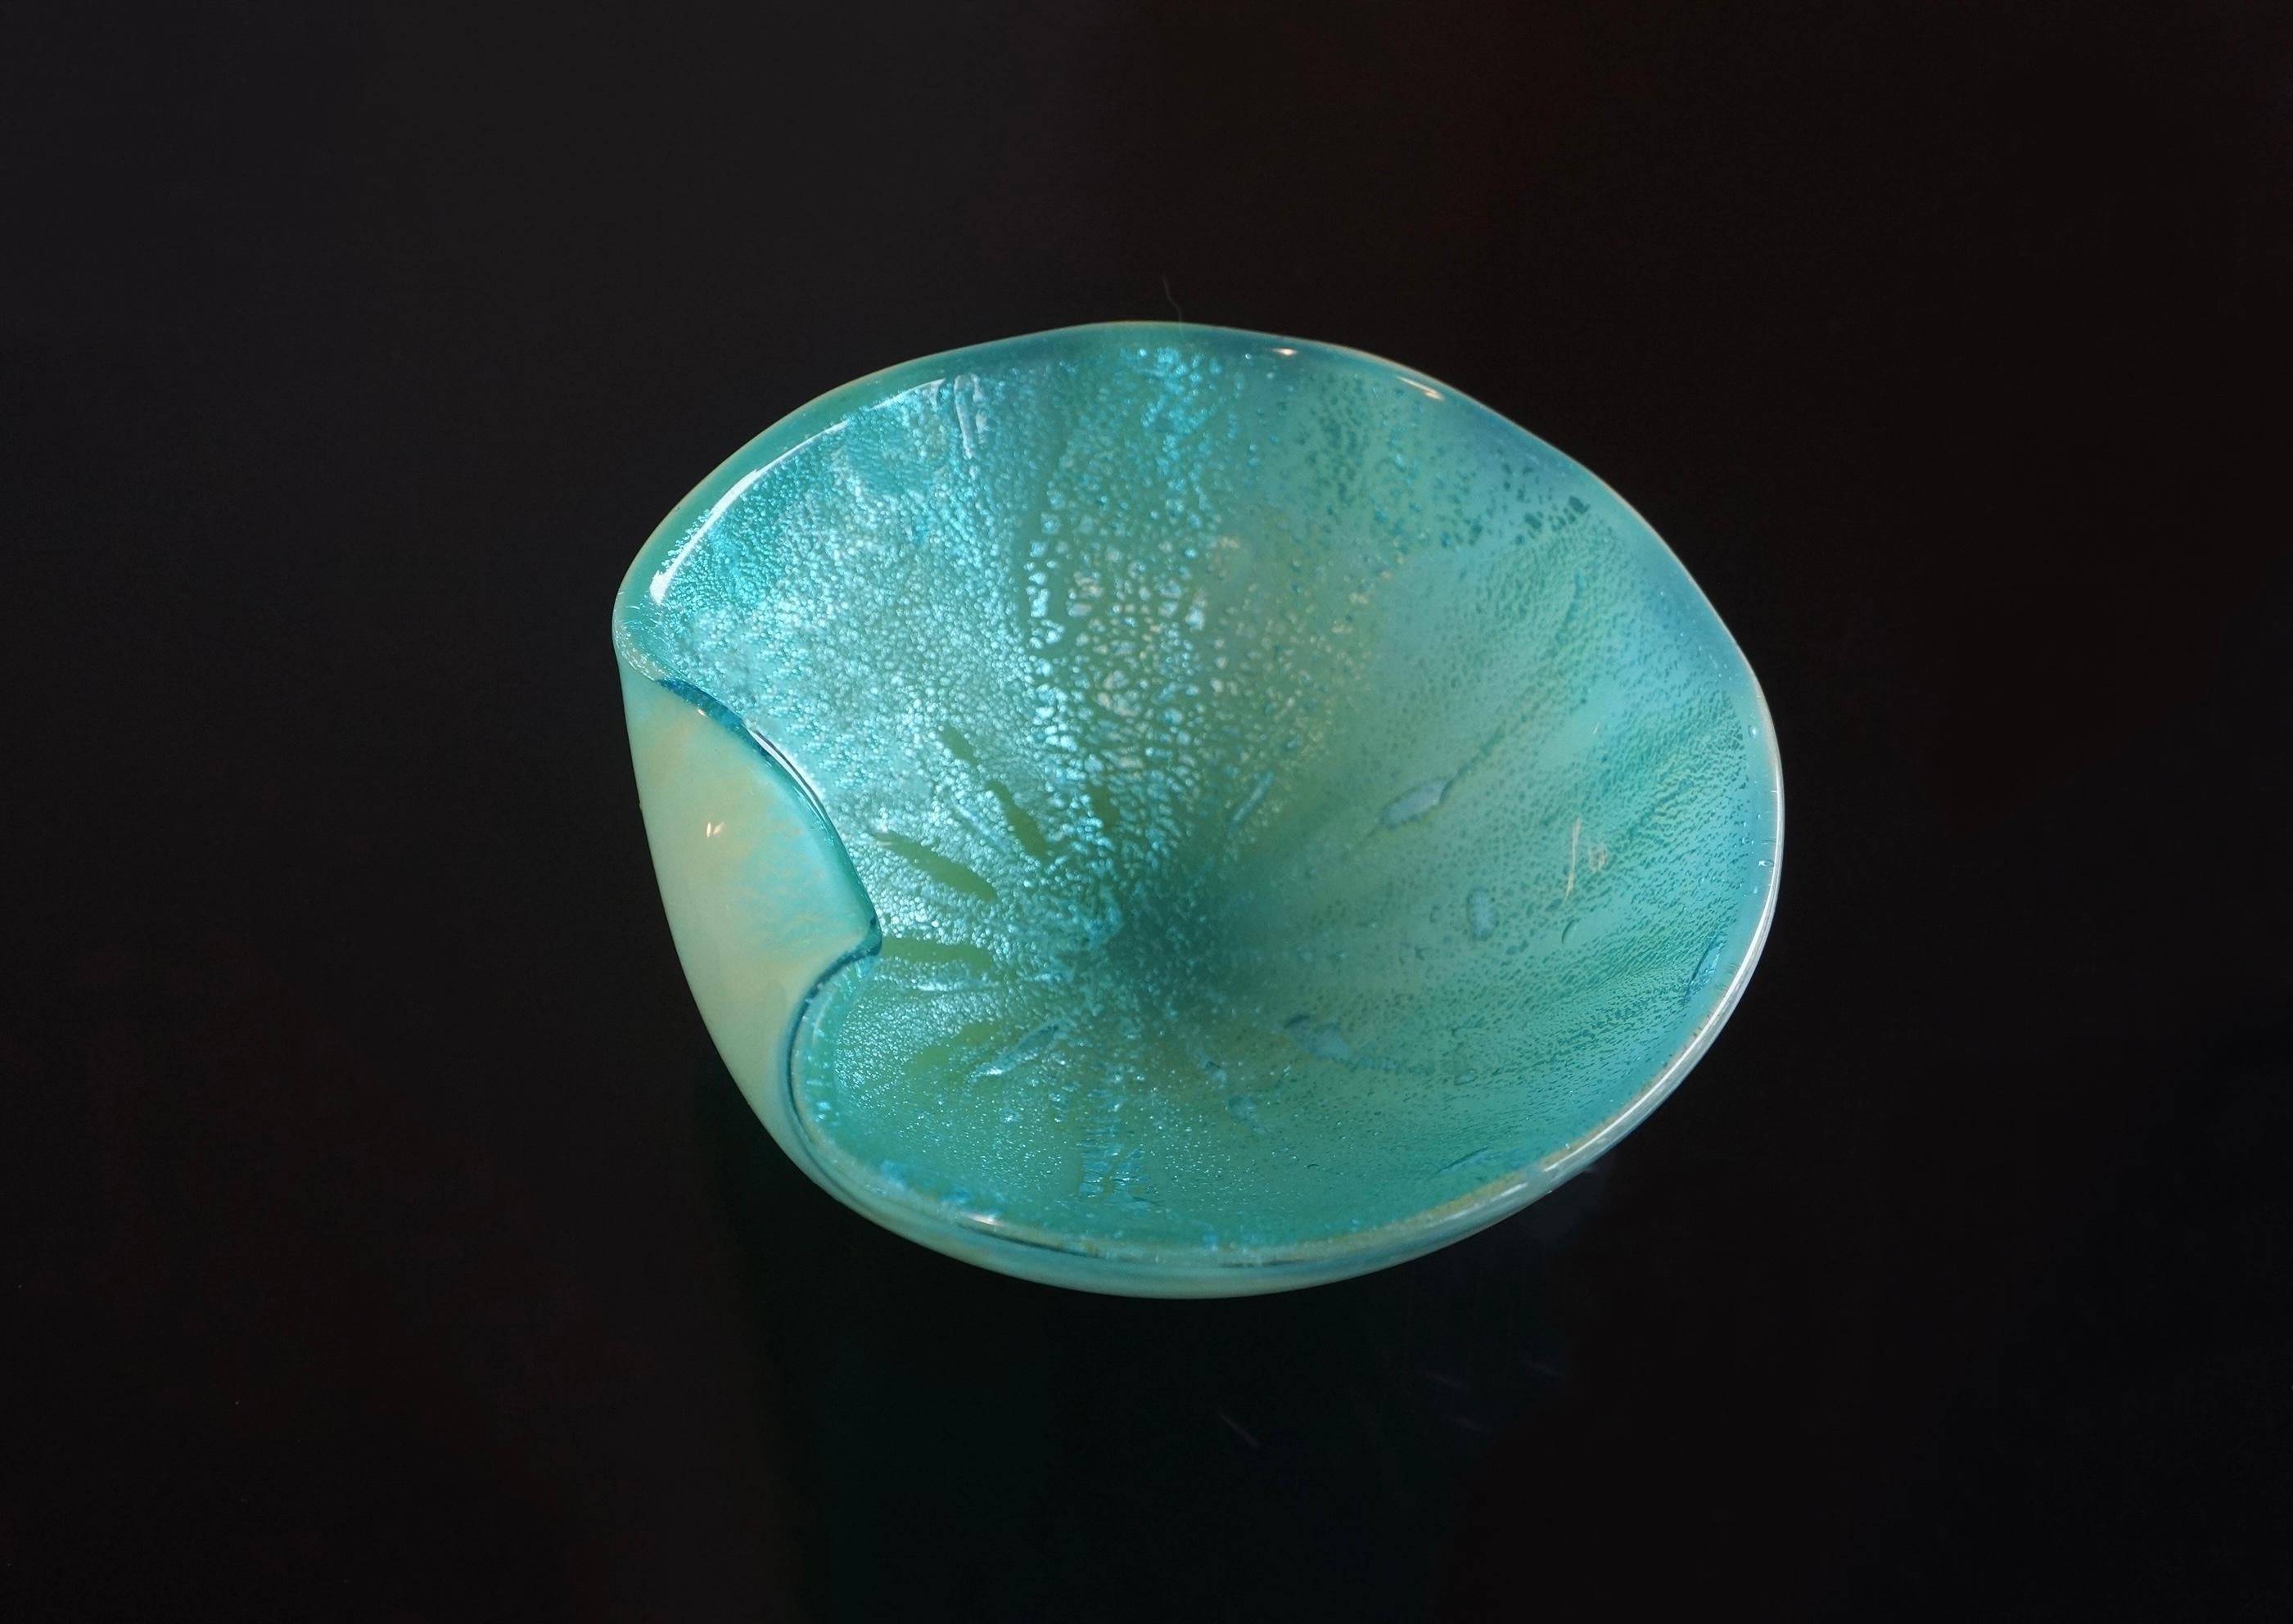 Spektakuläre dekorative Schale aus blauem und aquagrünem Murano-Kunstglas, die Archimede Murano zugeschrieben wird. Diese Schale ist aus blauem Kunstglas mit Aventurinsprenkeln in Blautönen gefertigt. Die Außenseite ist aus blauem Glas, während die